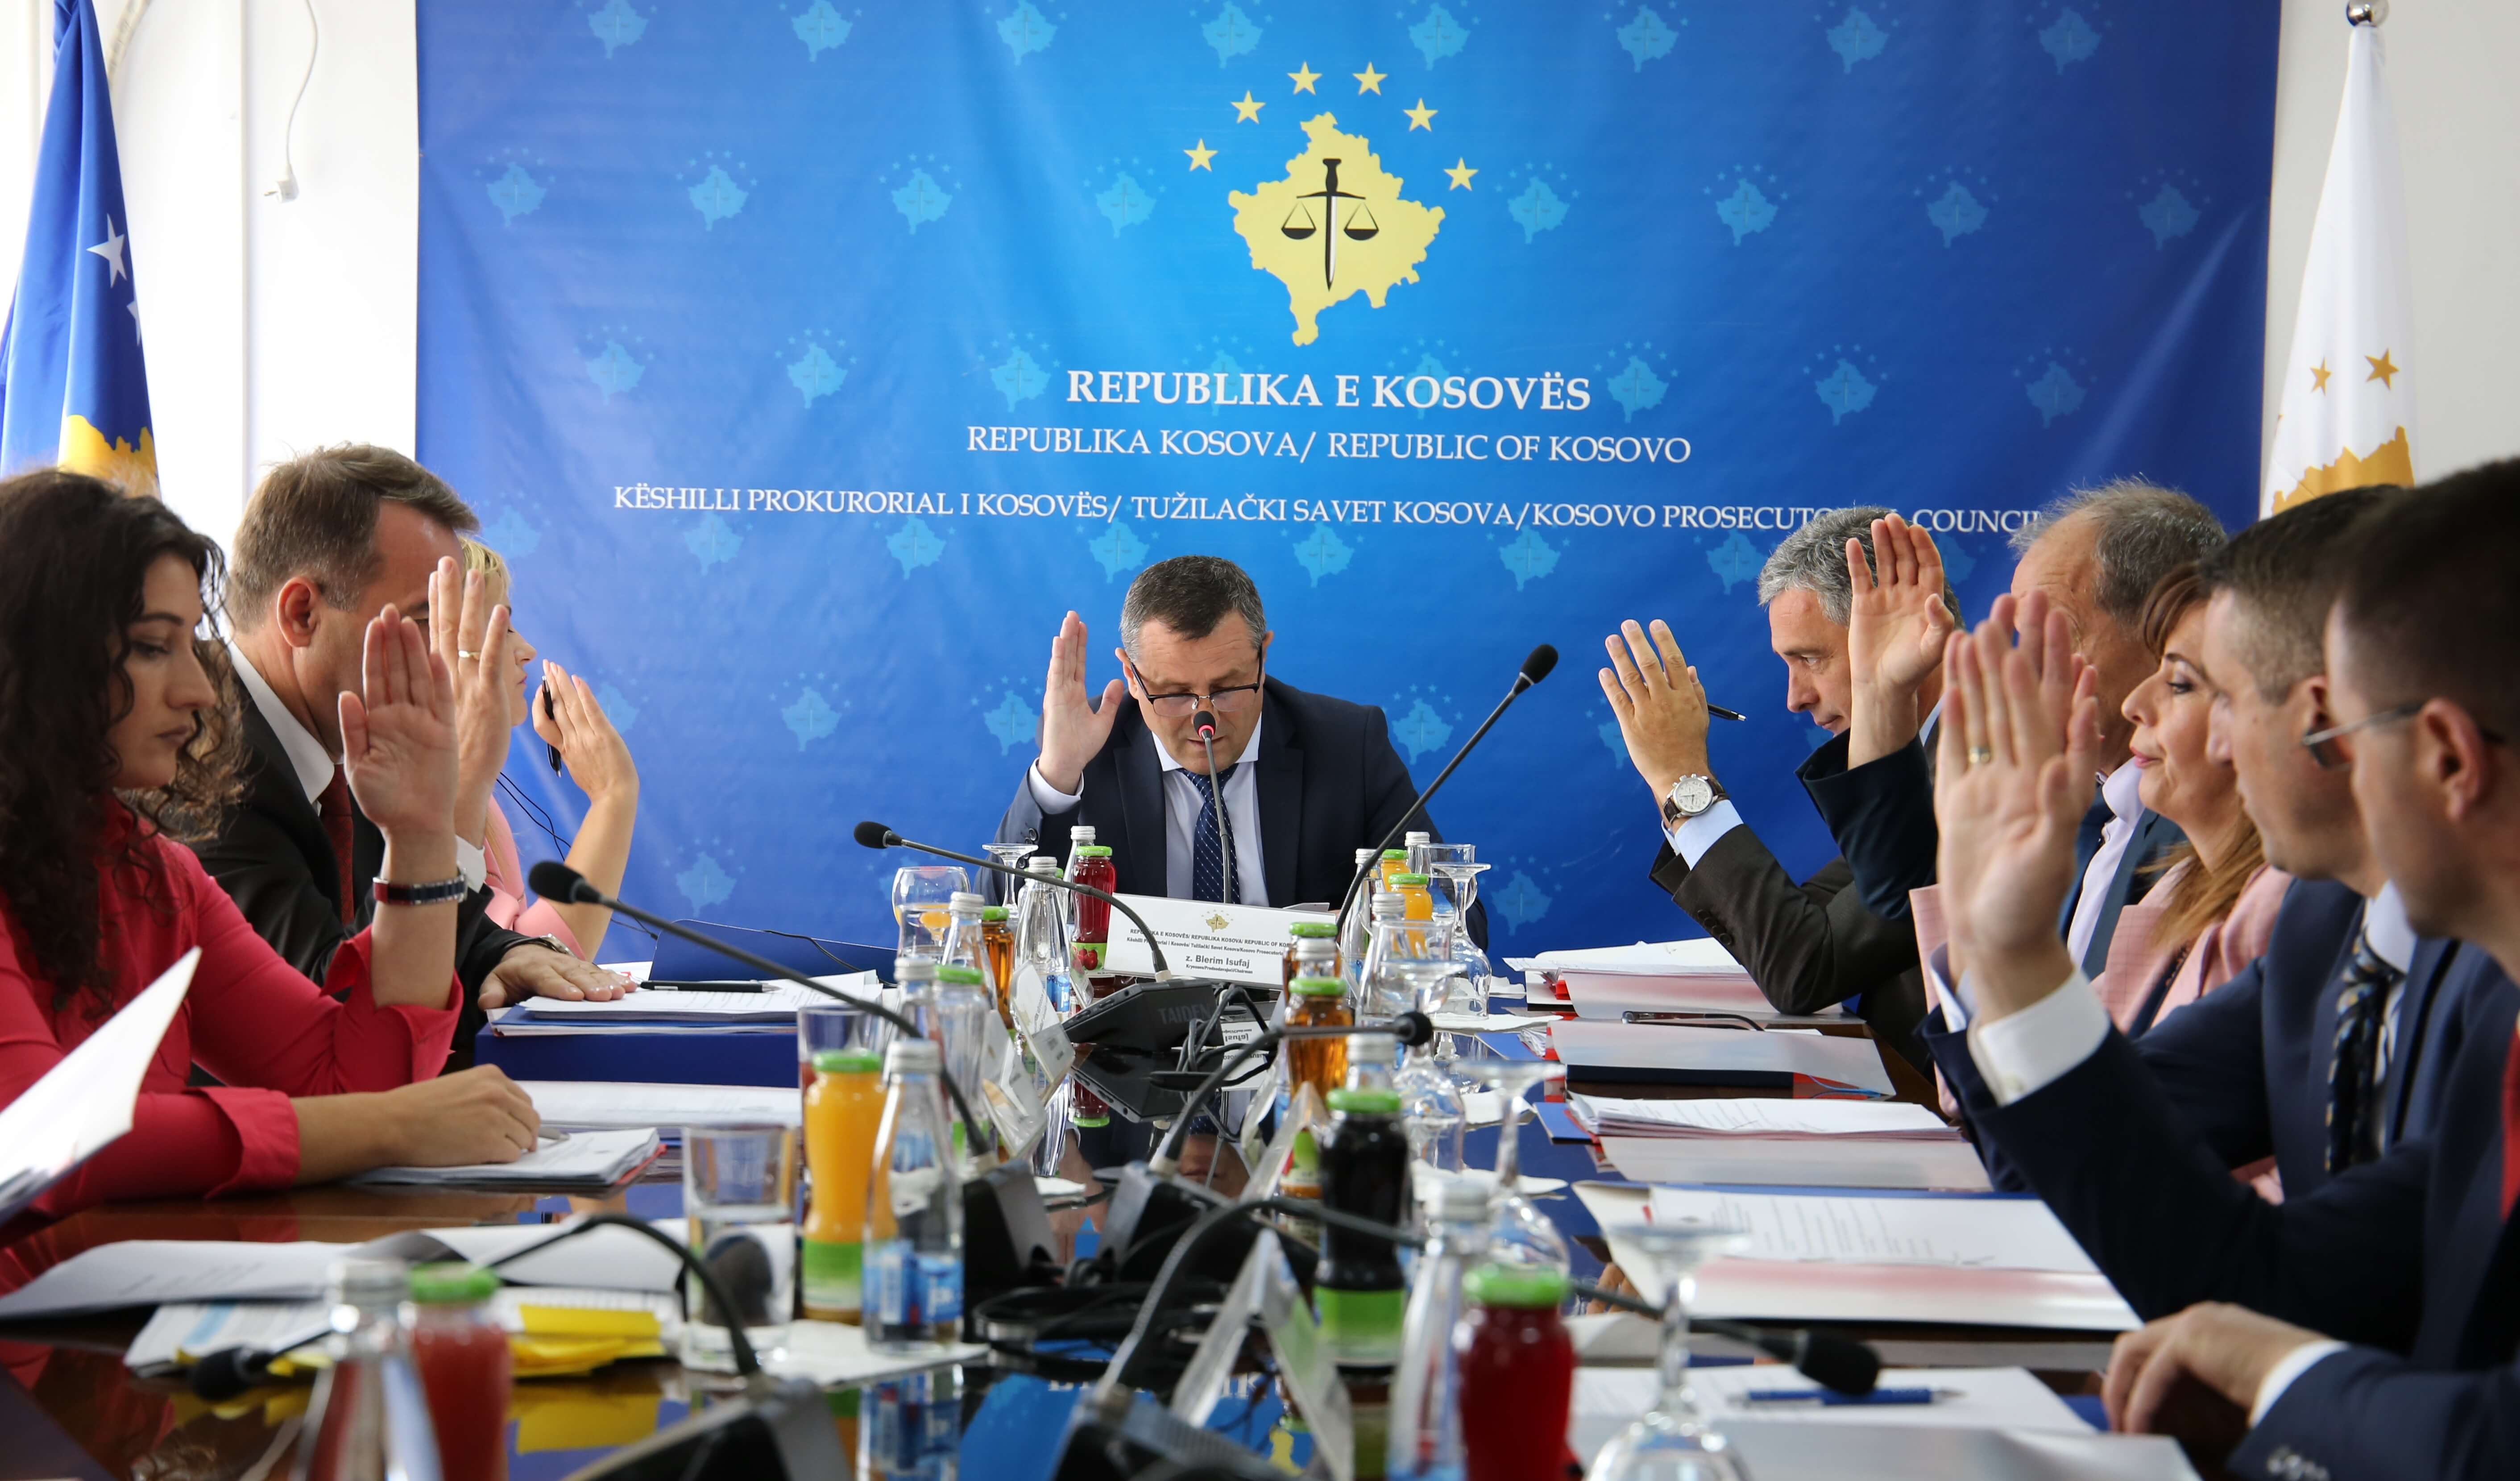 Reaction by Kosovo Prosecutorial Council